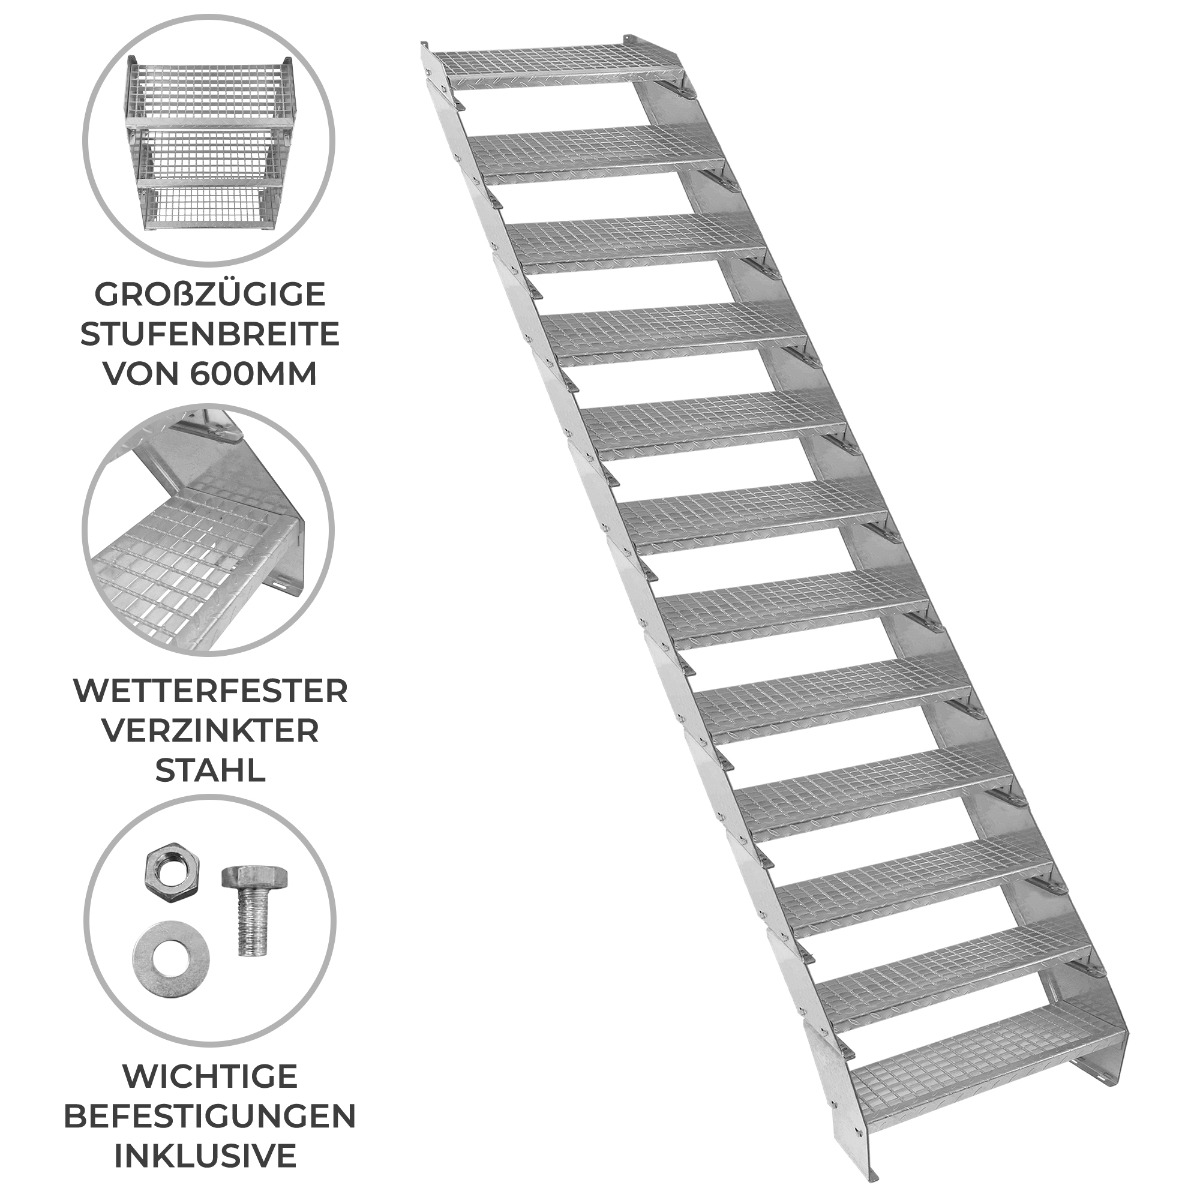 Verzinkter Stahl Treppe 12 Stufen | Anpassbare Gitterrost-Stufen Anzahl (2-12) & Höhenverstellbar | Wetterfest, Robust & Modular | für Außen Garten Terrasse | GRATIS Befestigungssatz [60cm breit]